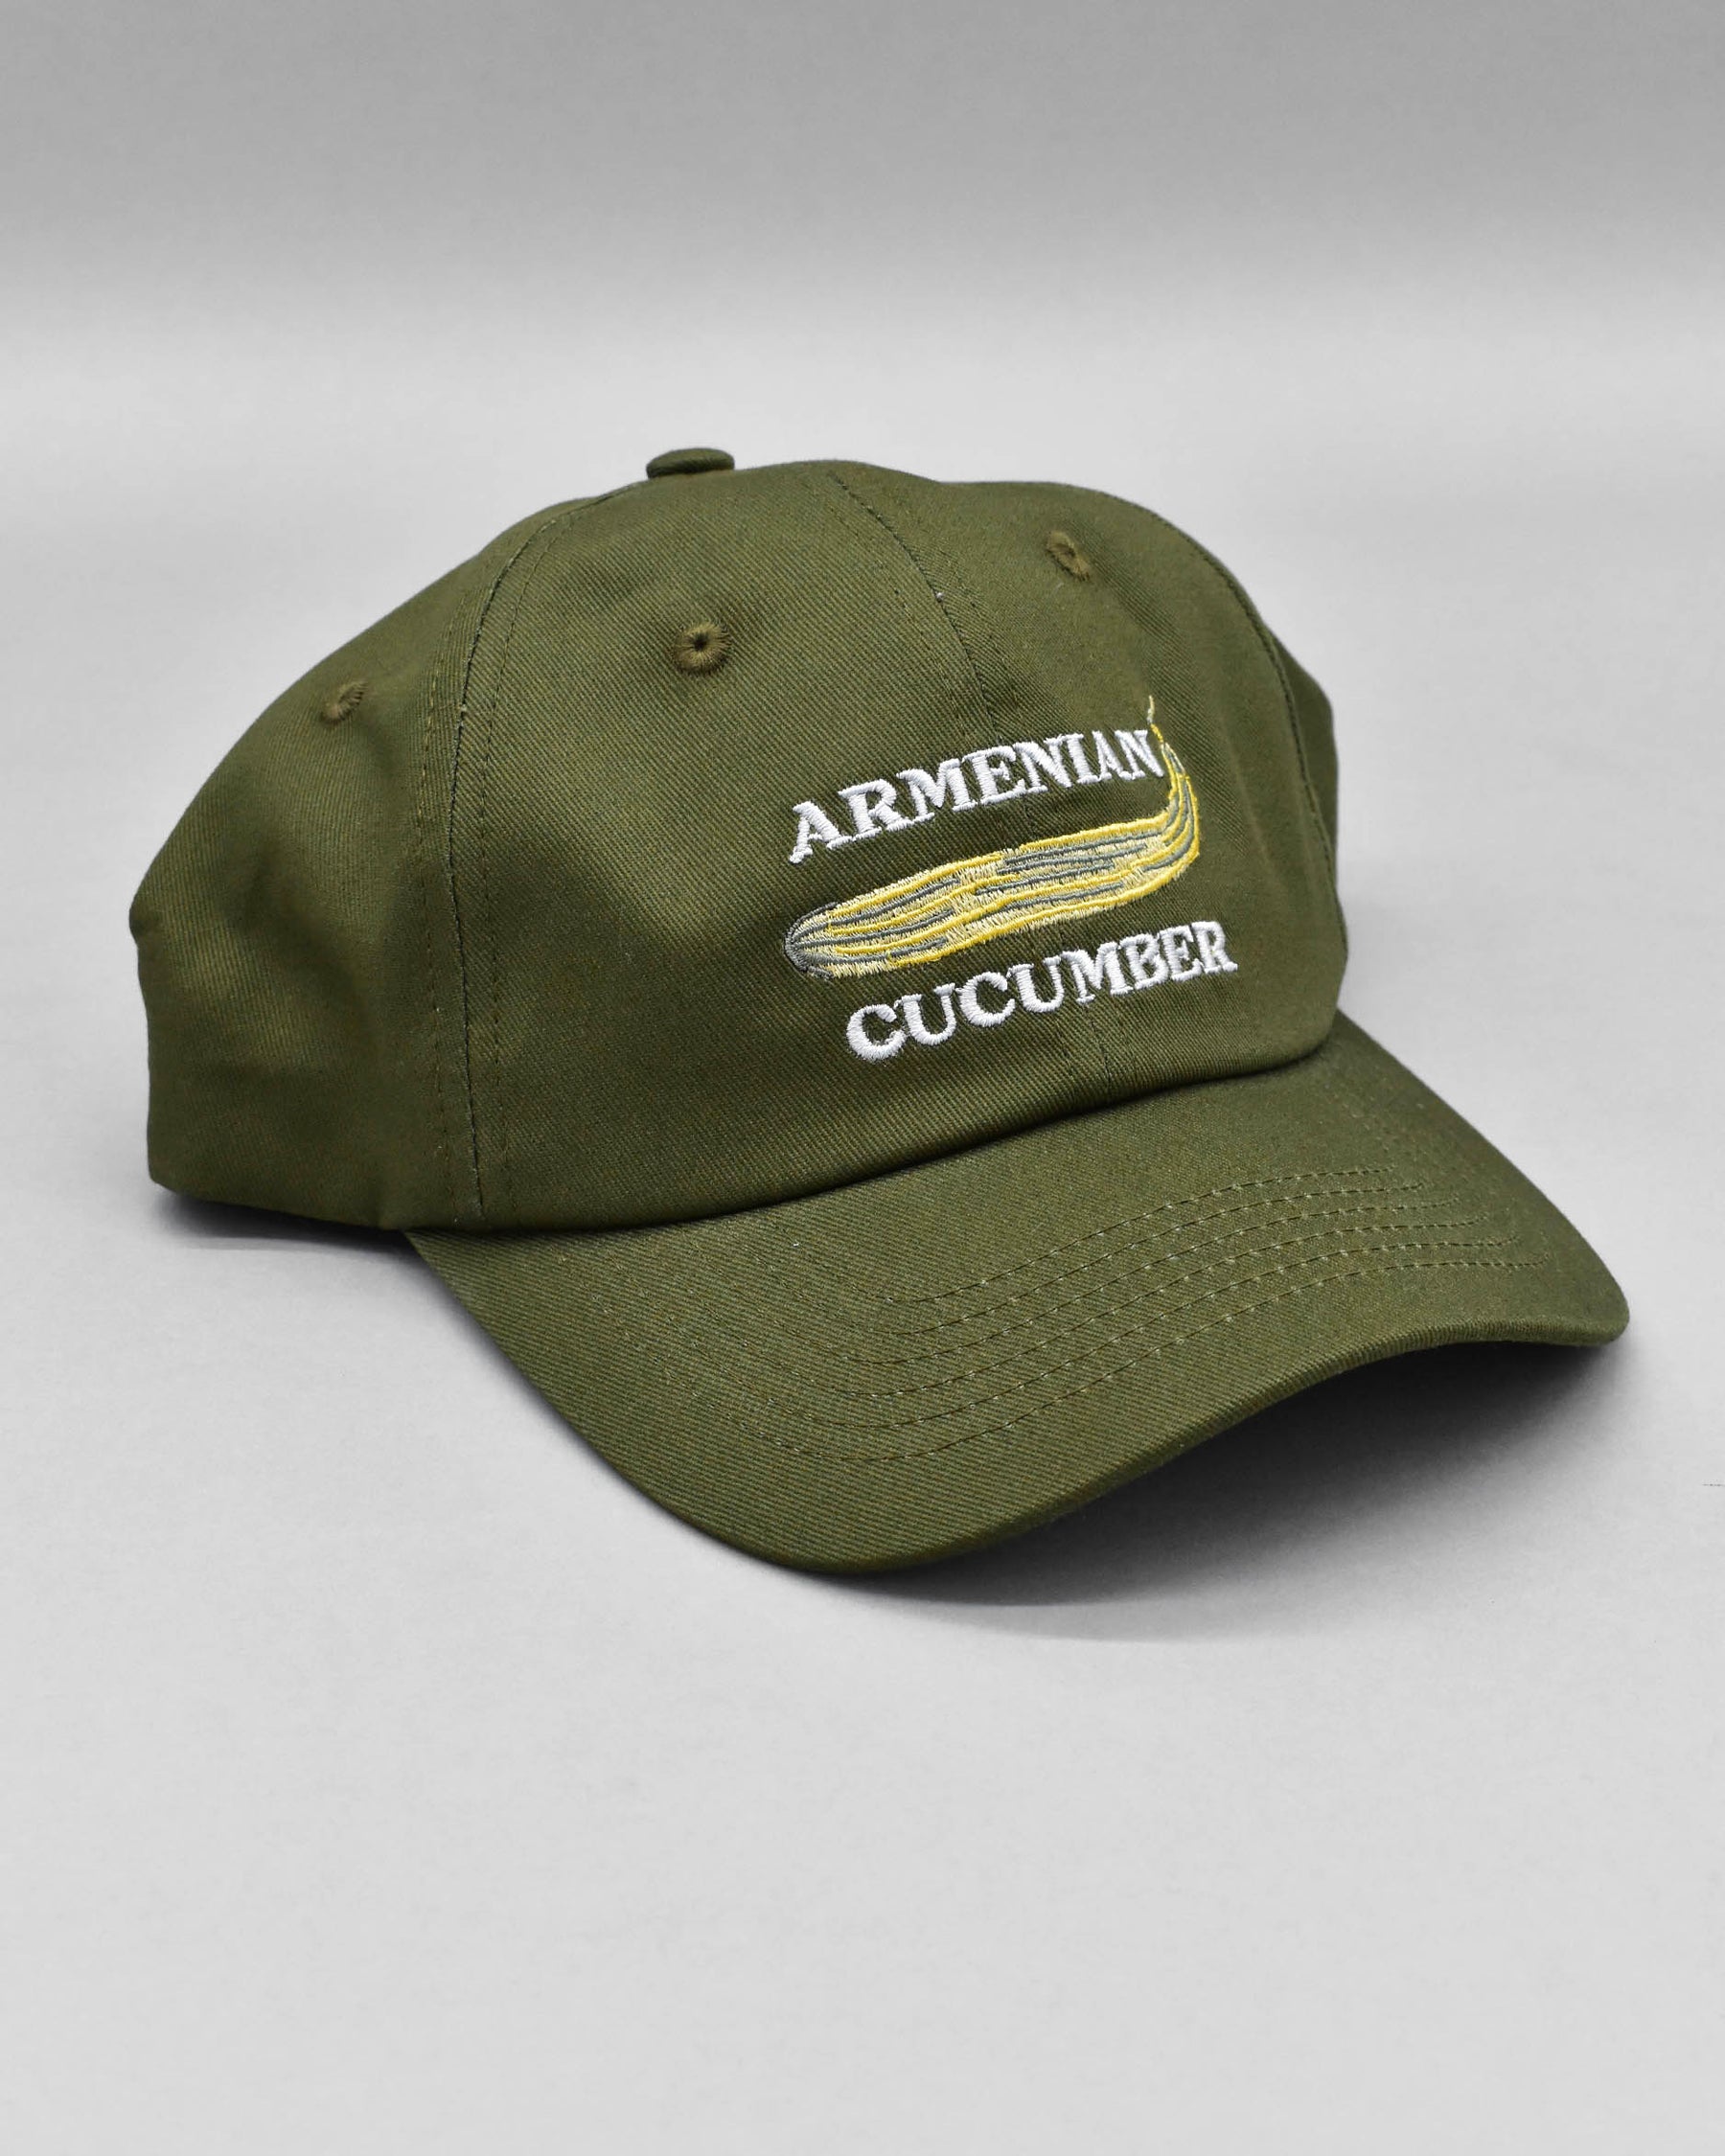 Armenian Cucumber Retro Dad Cap